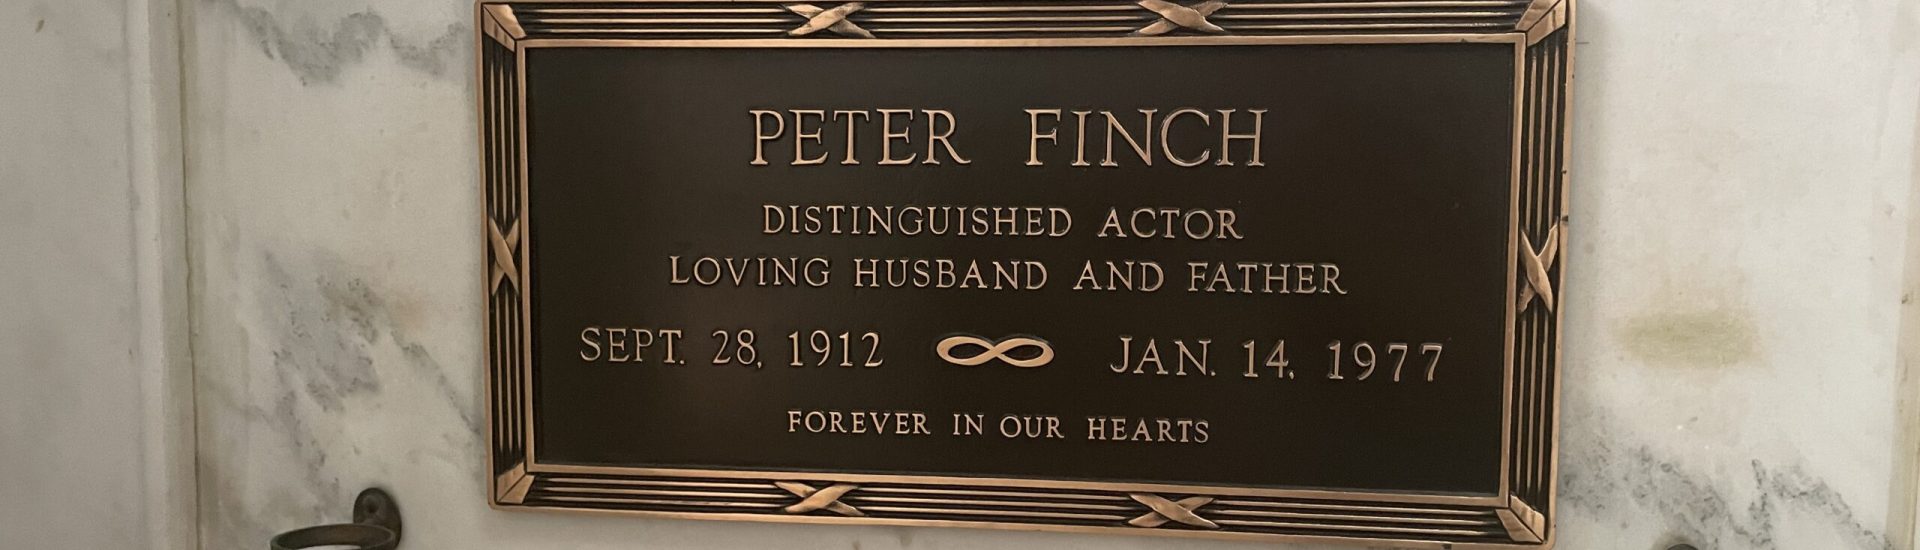 Peter Finch